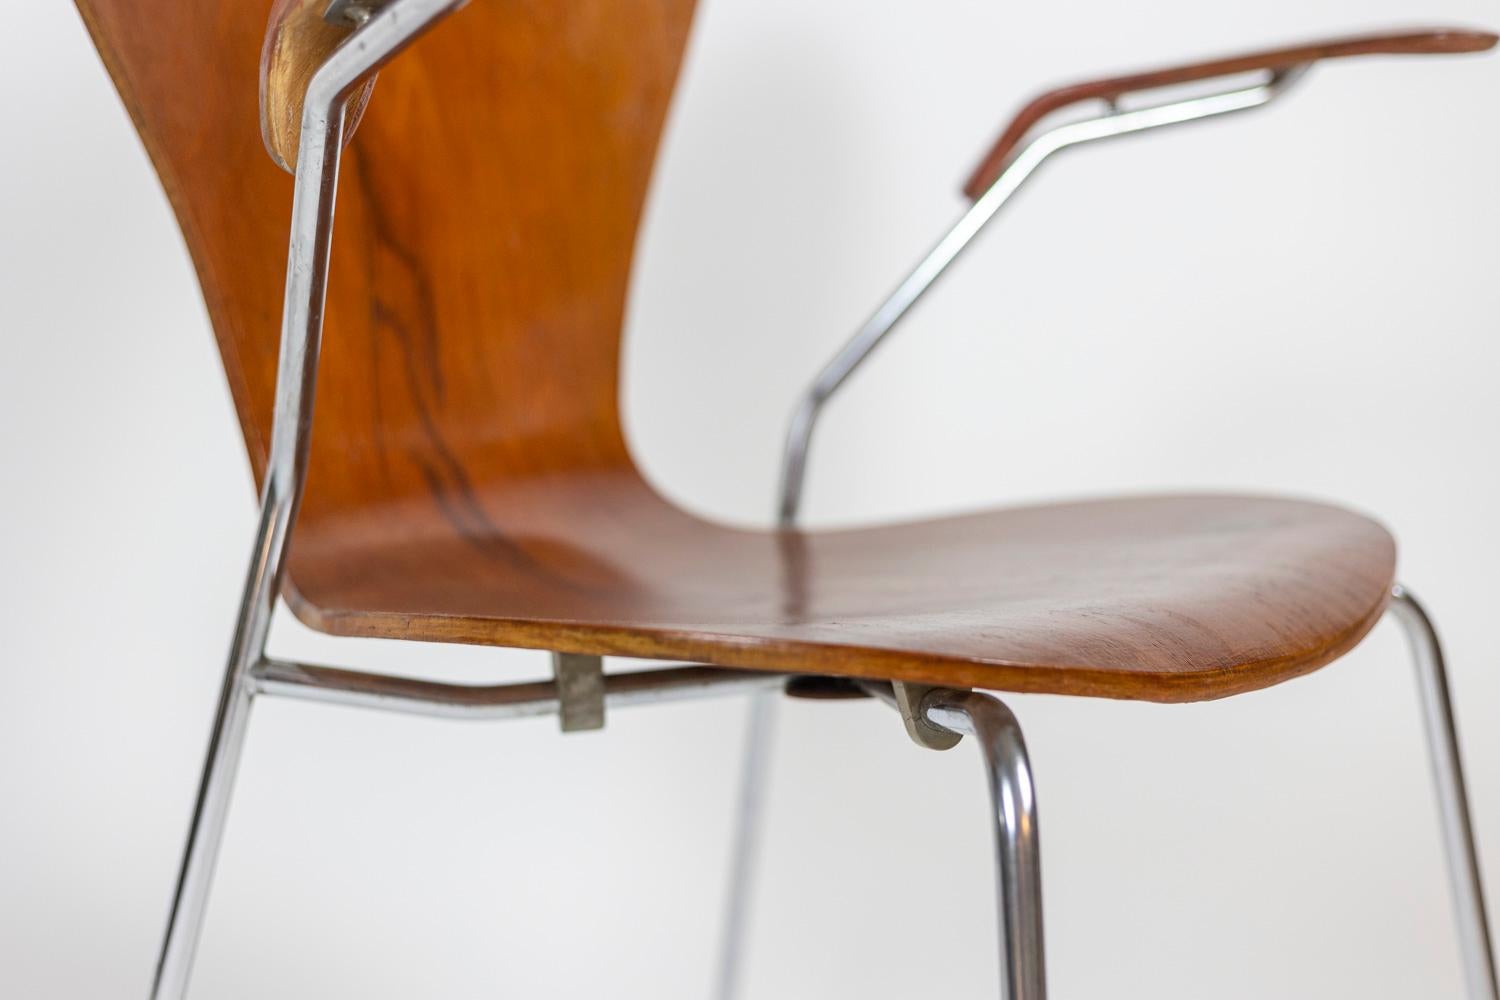 Arne Jacobsen, dem zugeschrieben wird. 
Fritz Hansen, herausgegeben von.

Sessel aus geformtem Sperrholz, Modell 